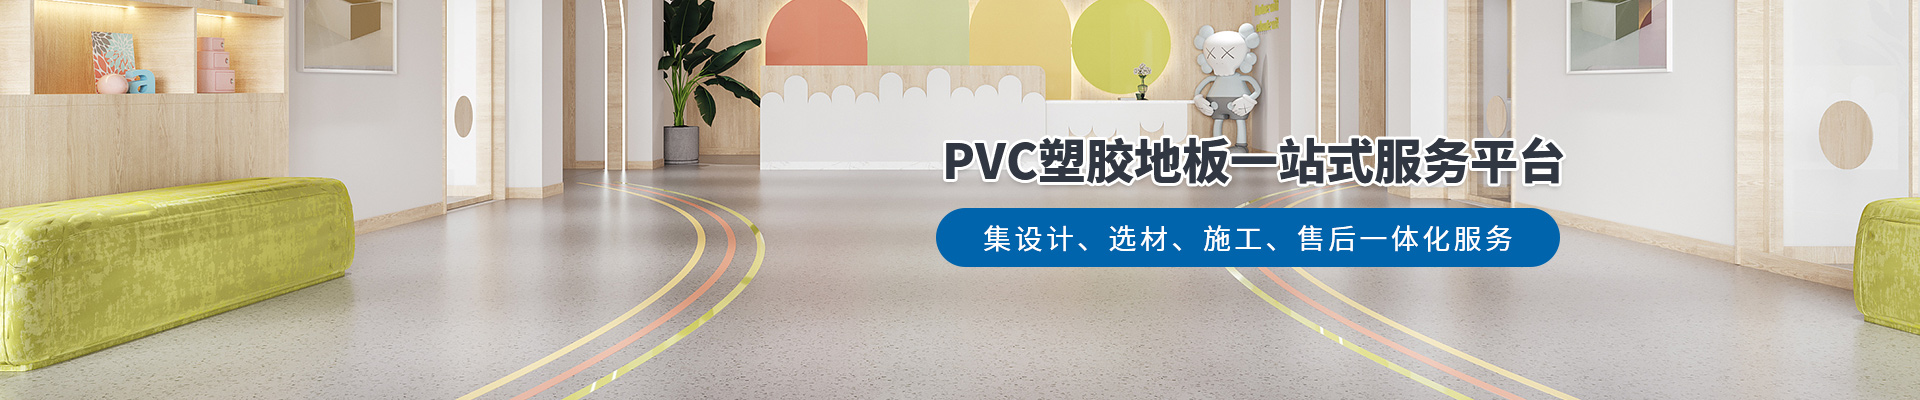 鳳城橡塑，PVC塑膠地板一站式服務平臺